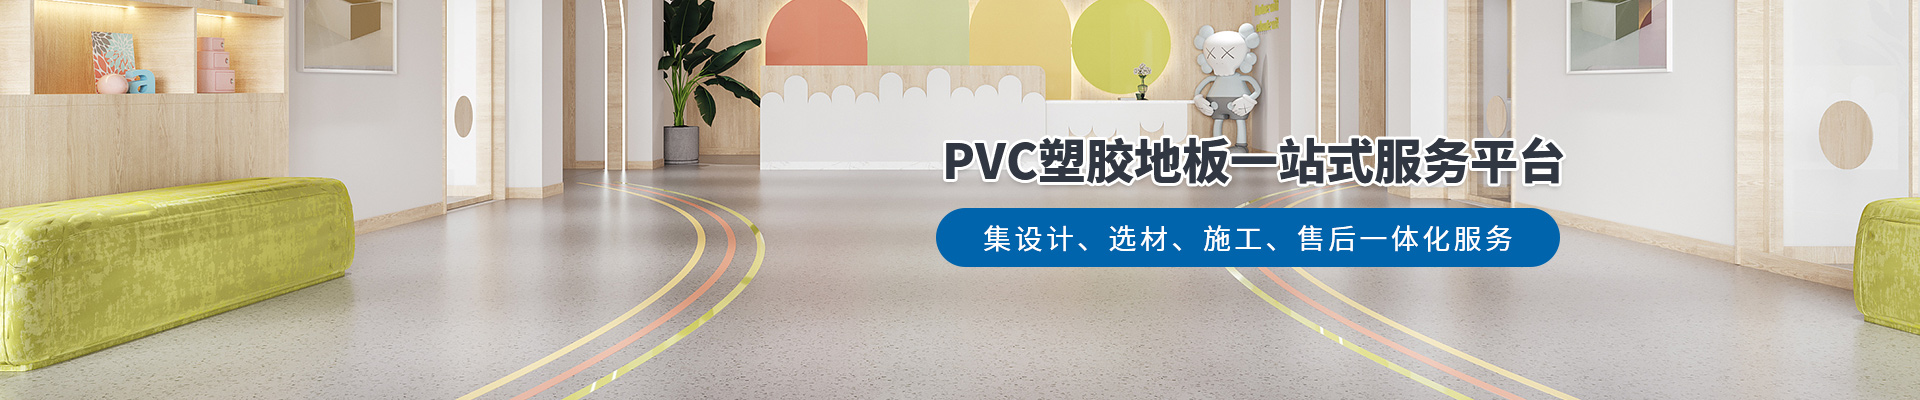 鳳城橡塑，PVC塑膠地板一站式服務平臺